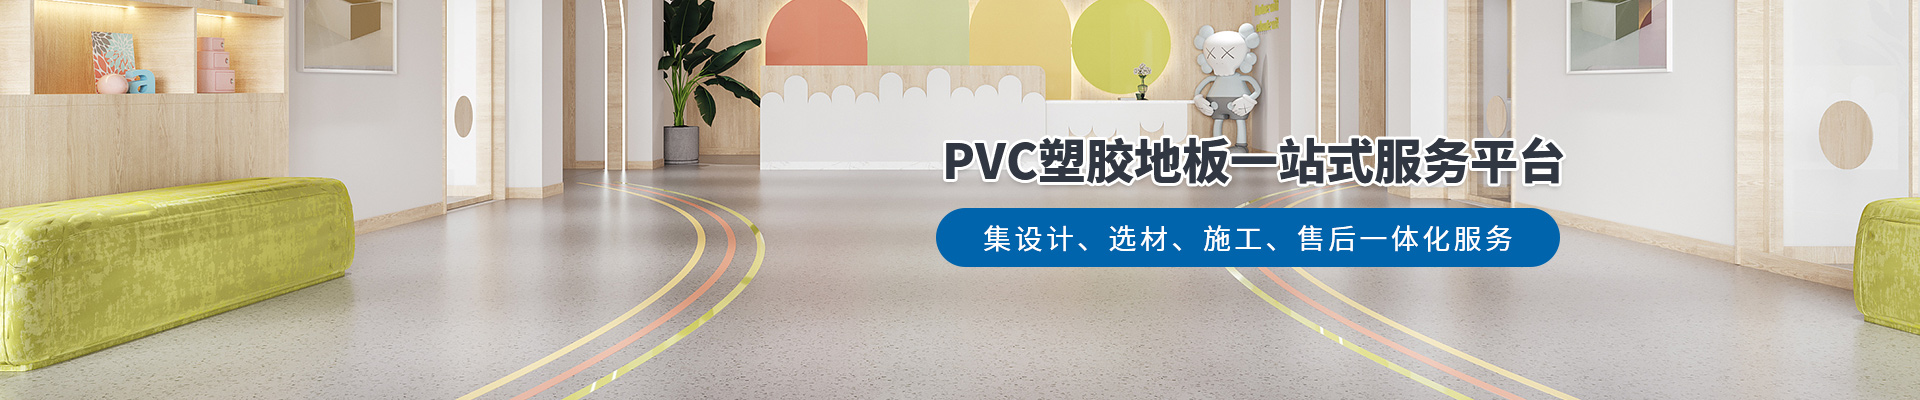 鳳城橡塑，PVC塑膠地板一站式服務平臺